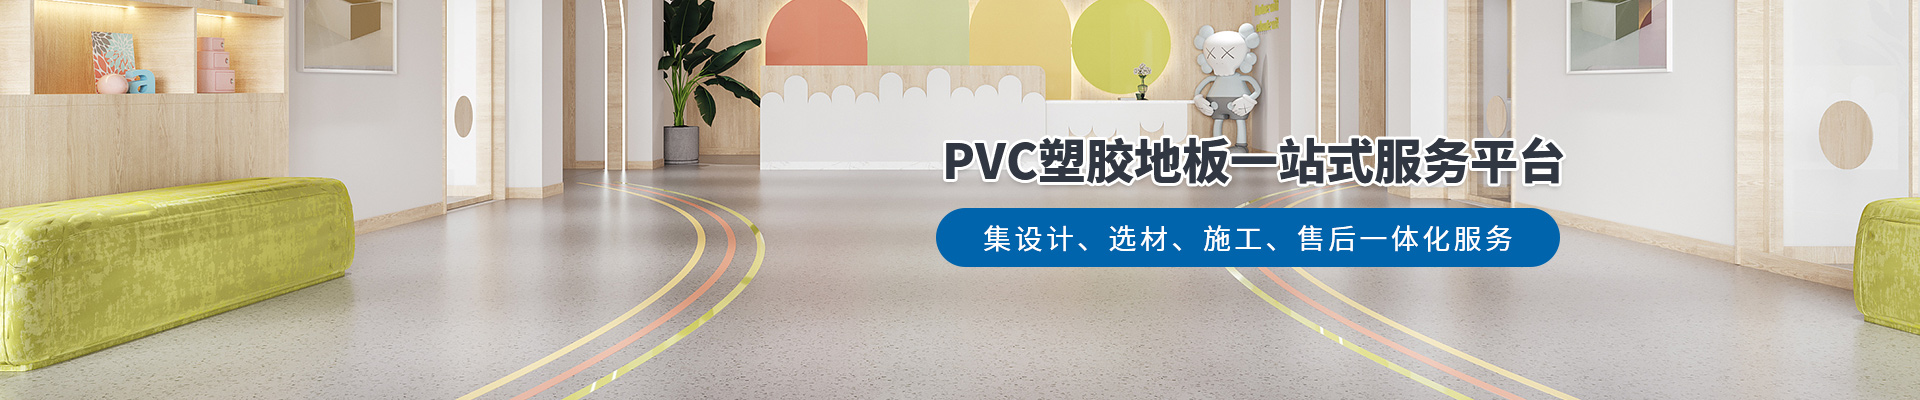 鳳城橡塑，PVC塑膠地板一站式服務平臺